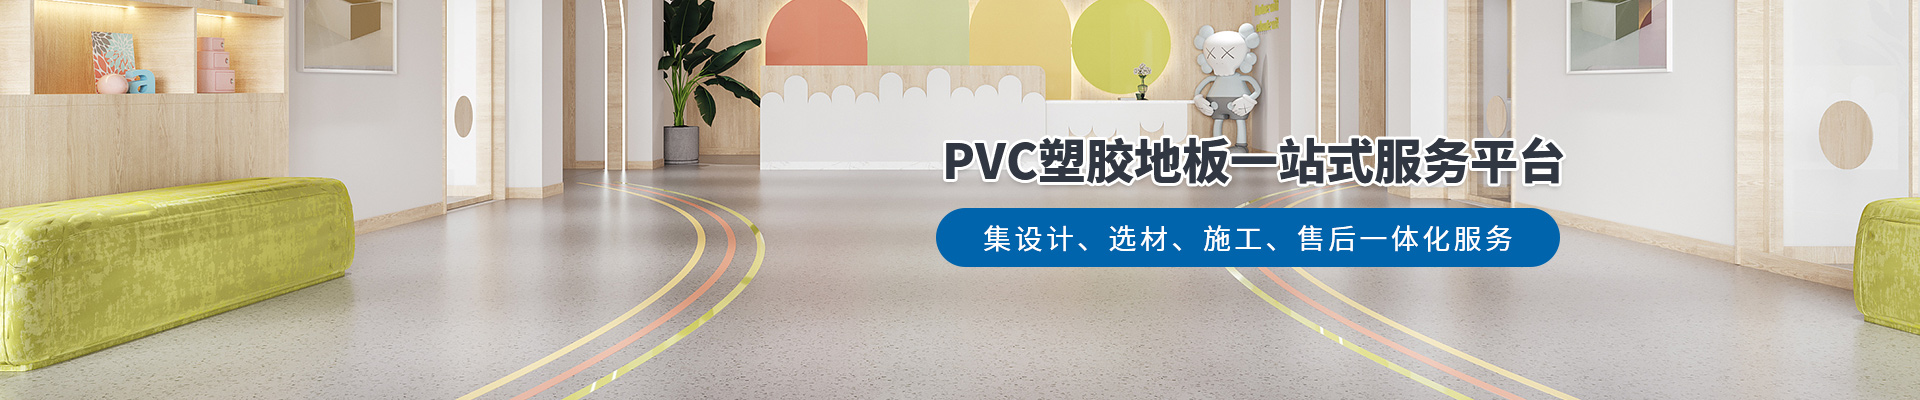 鳳城橡塑，PVC塑膠地板一站式服務平臺